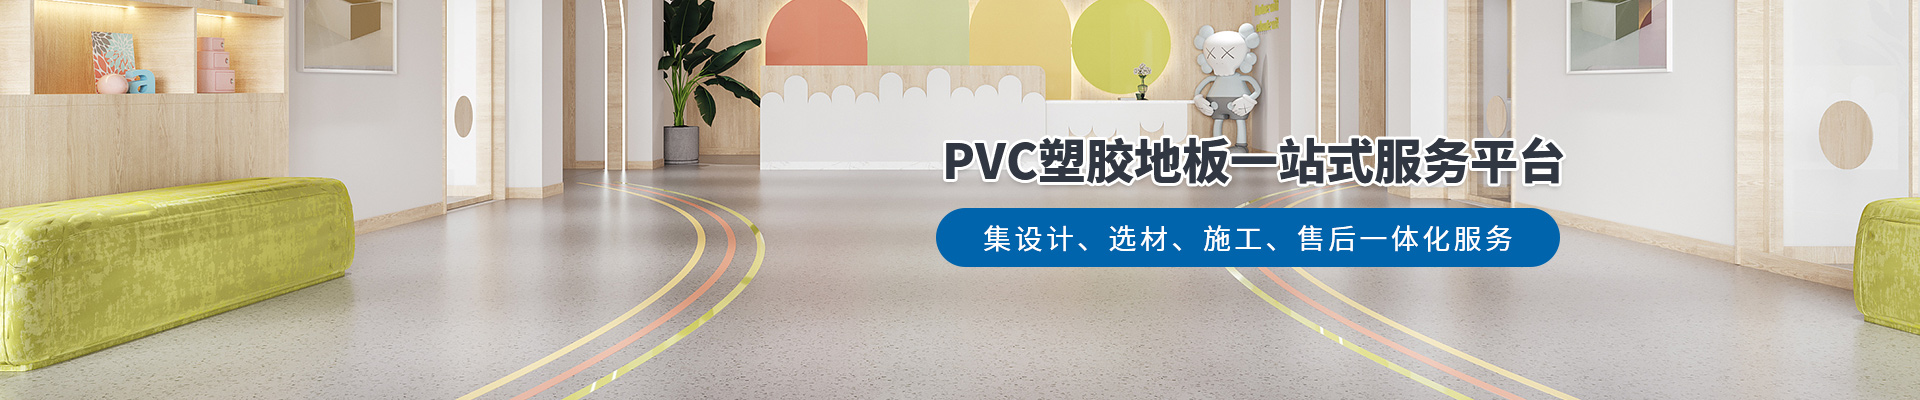 鳳城橡塑，PVC塑膠地板一站式服務平臺